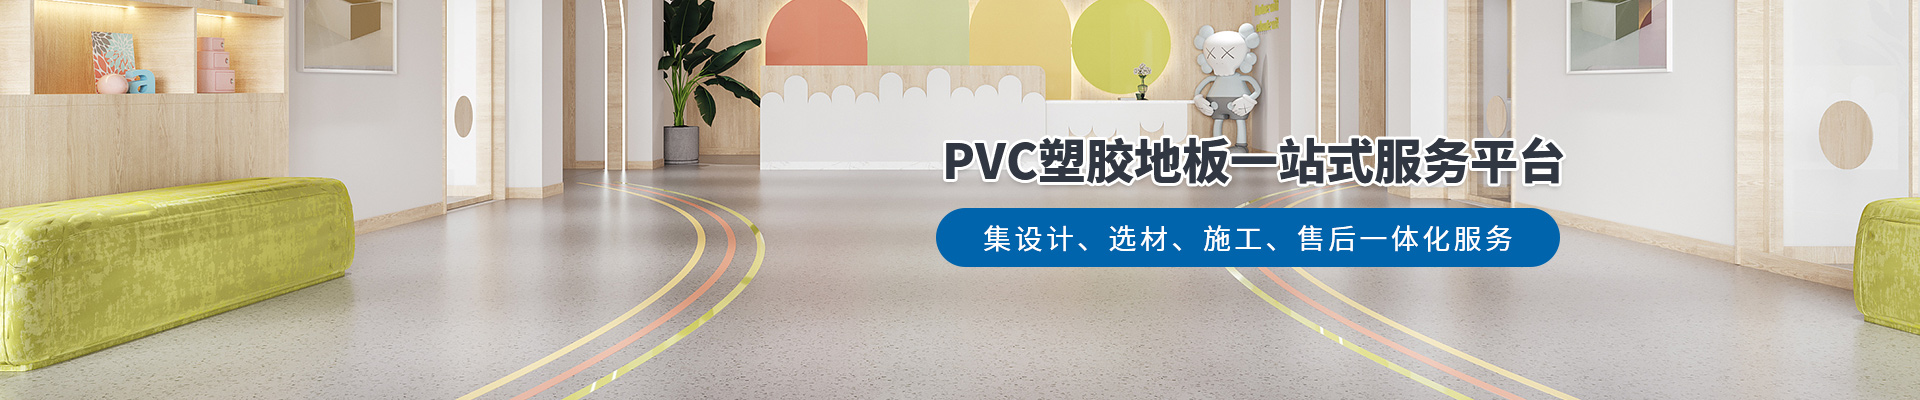 鳳城橡塑，PVC塑膠地板一站式服務平臺